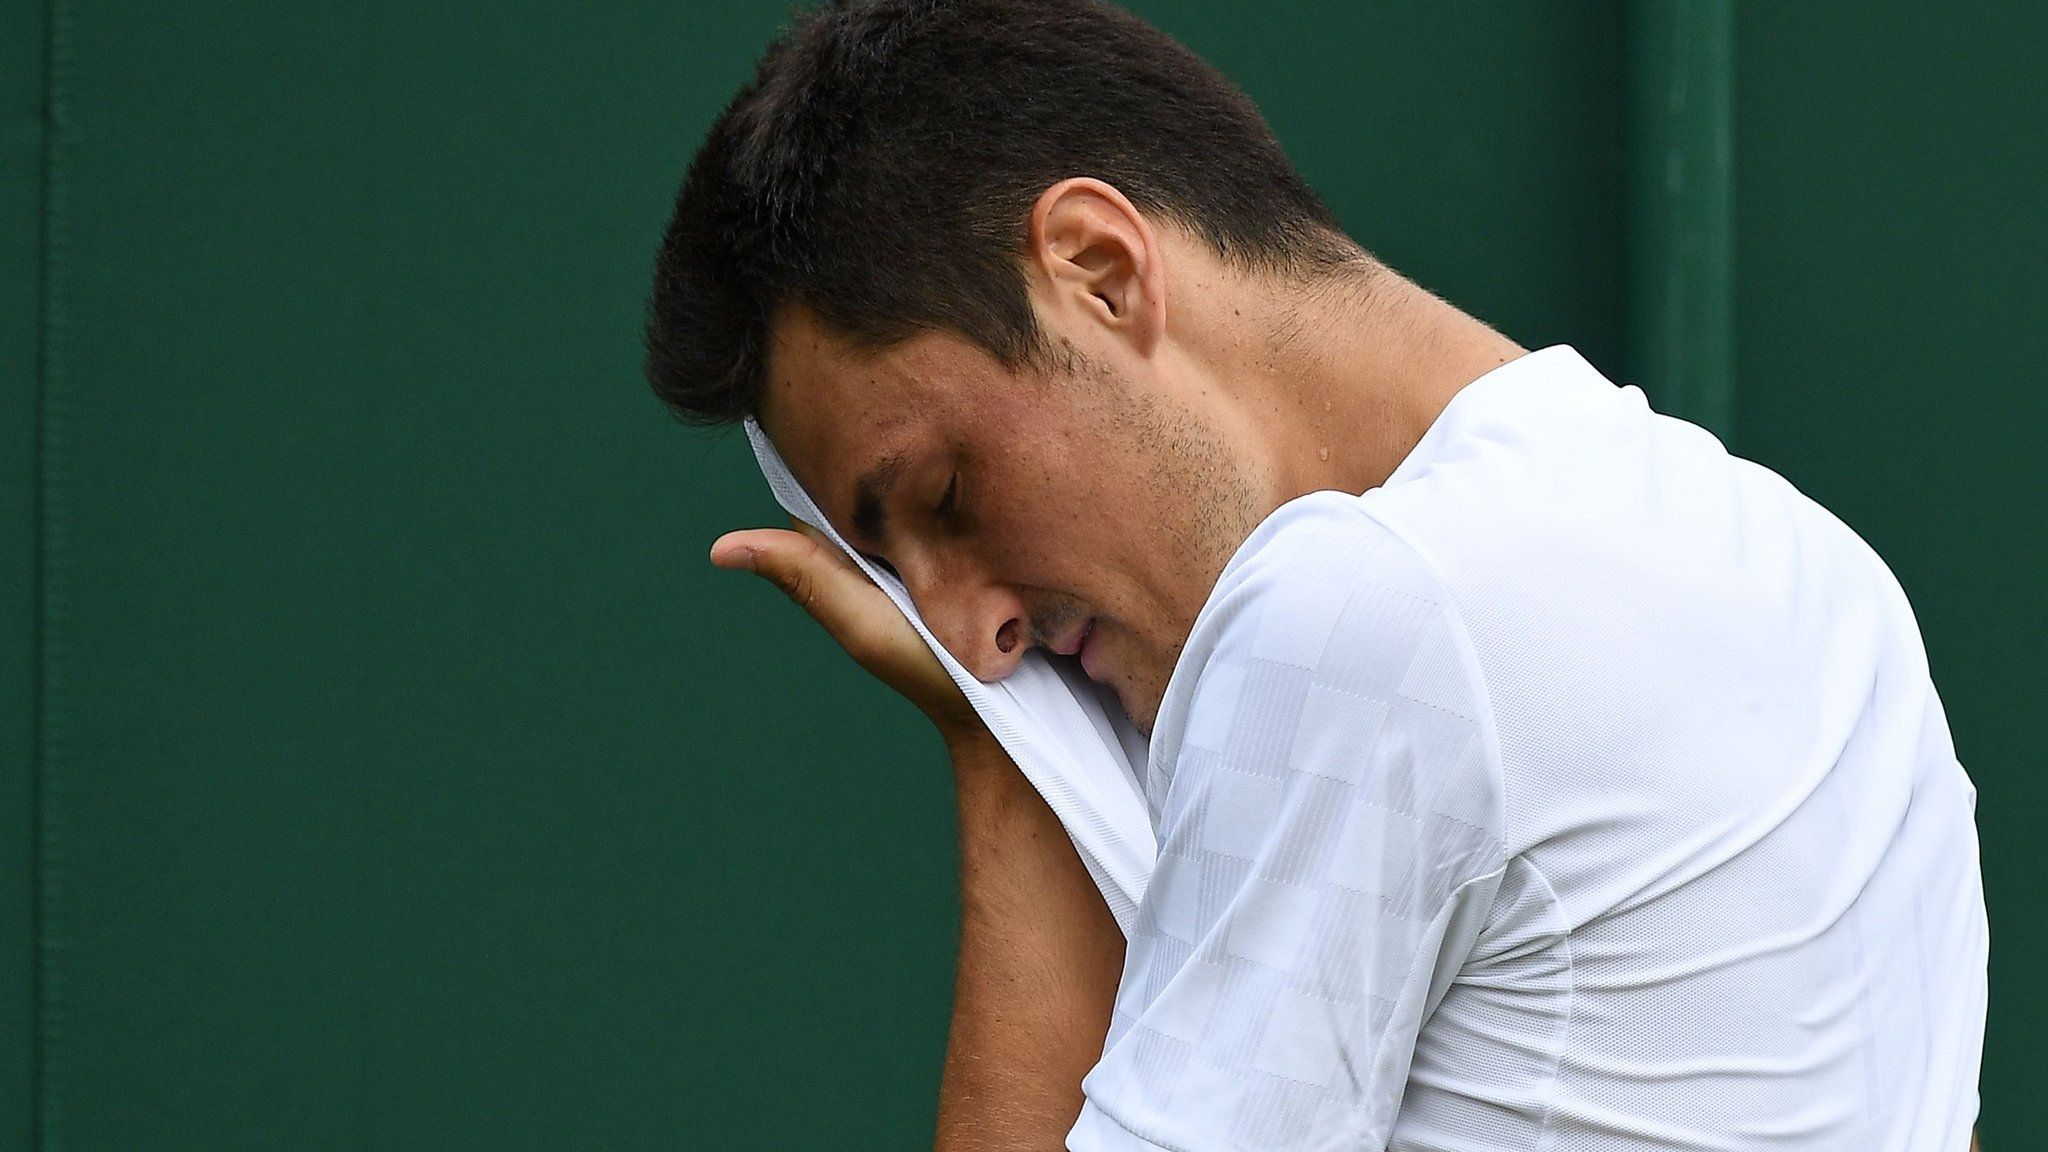 Bernard Tomic loses at Wimbledon